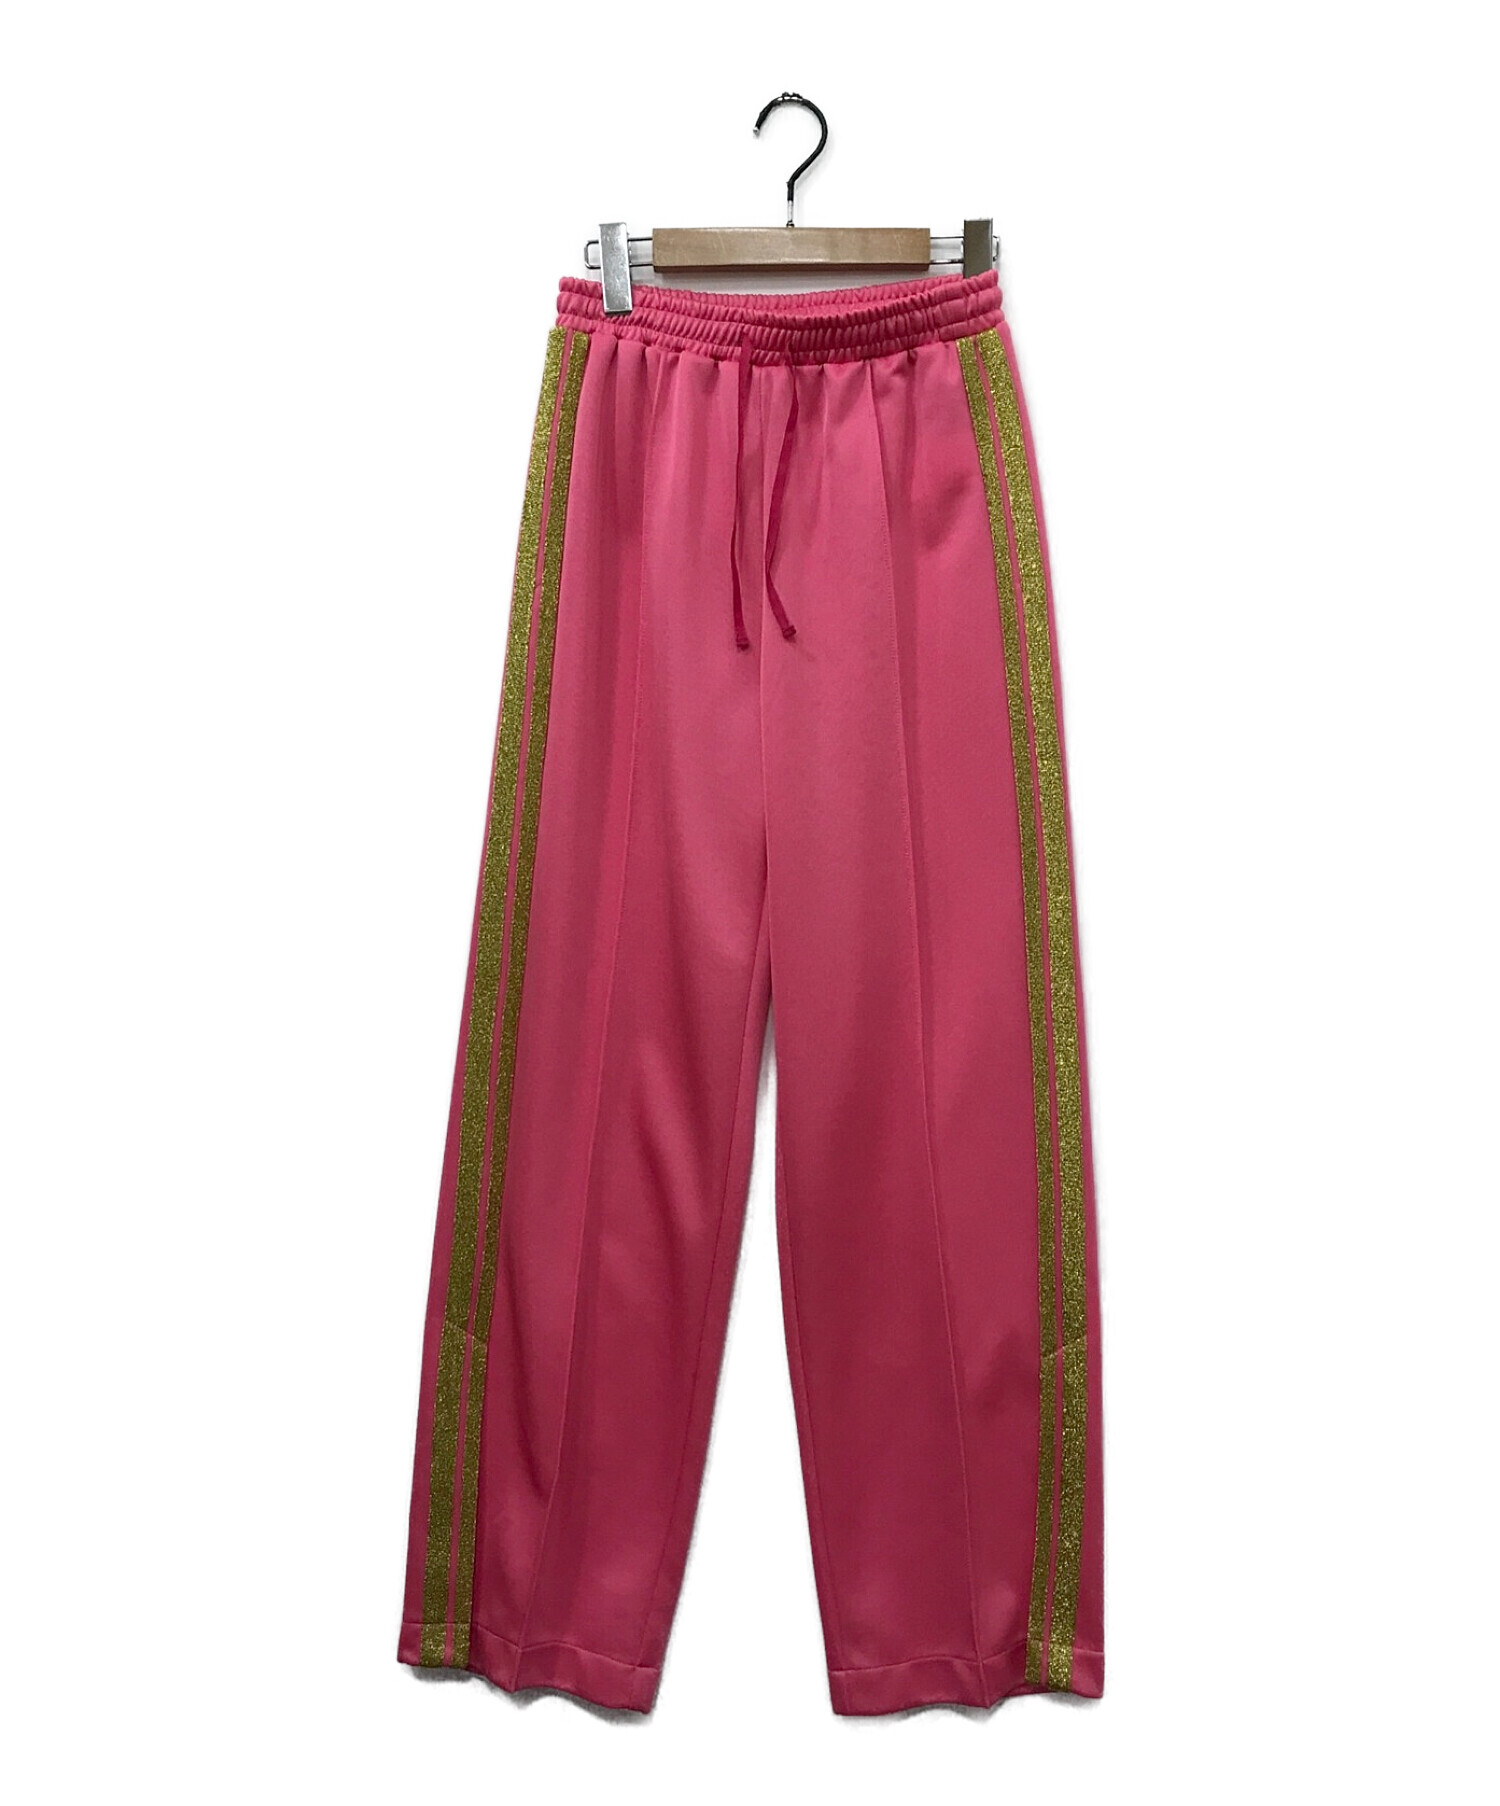 MAISON SPECIAL (メゾンスペシャル) スパークルサイドラインジャージパンツ ピンク サイズ:38